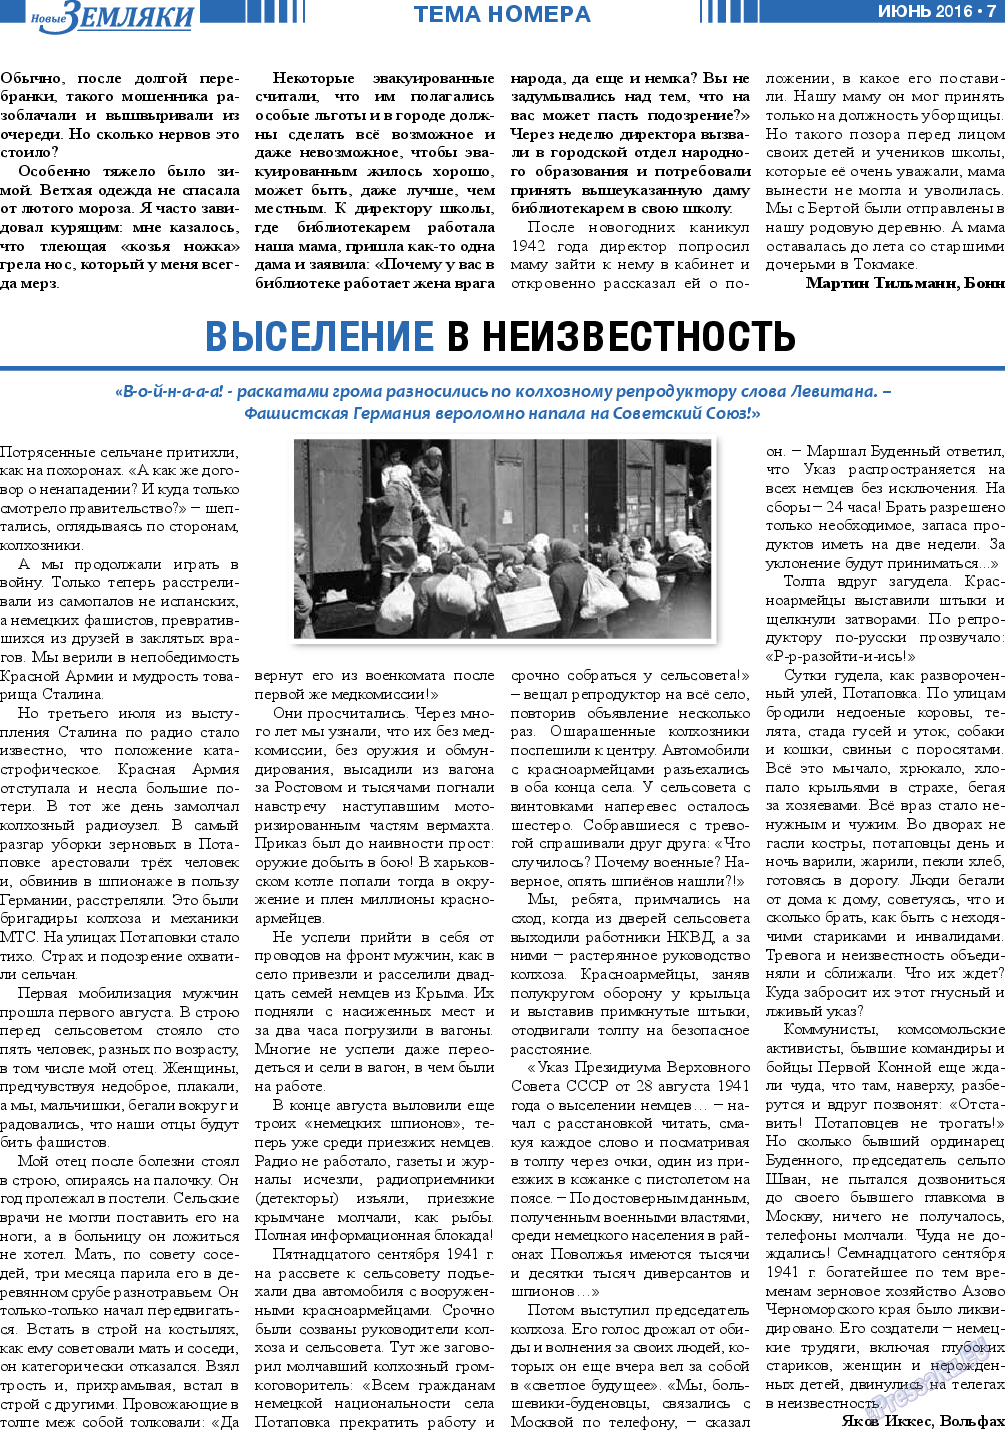 Новые Земляки, газета. 2016 №6 стр.7